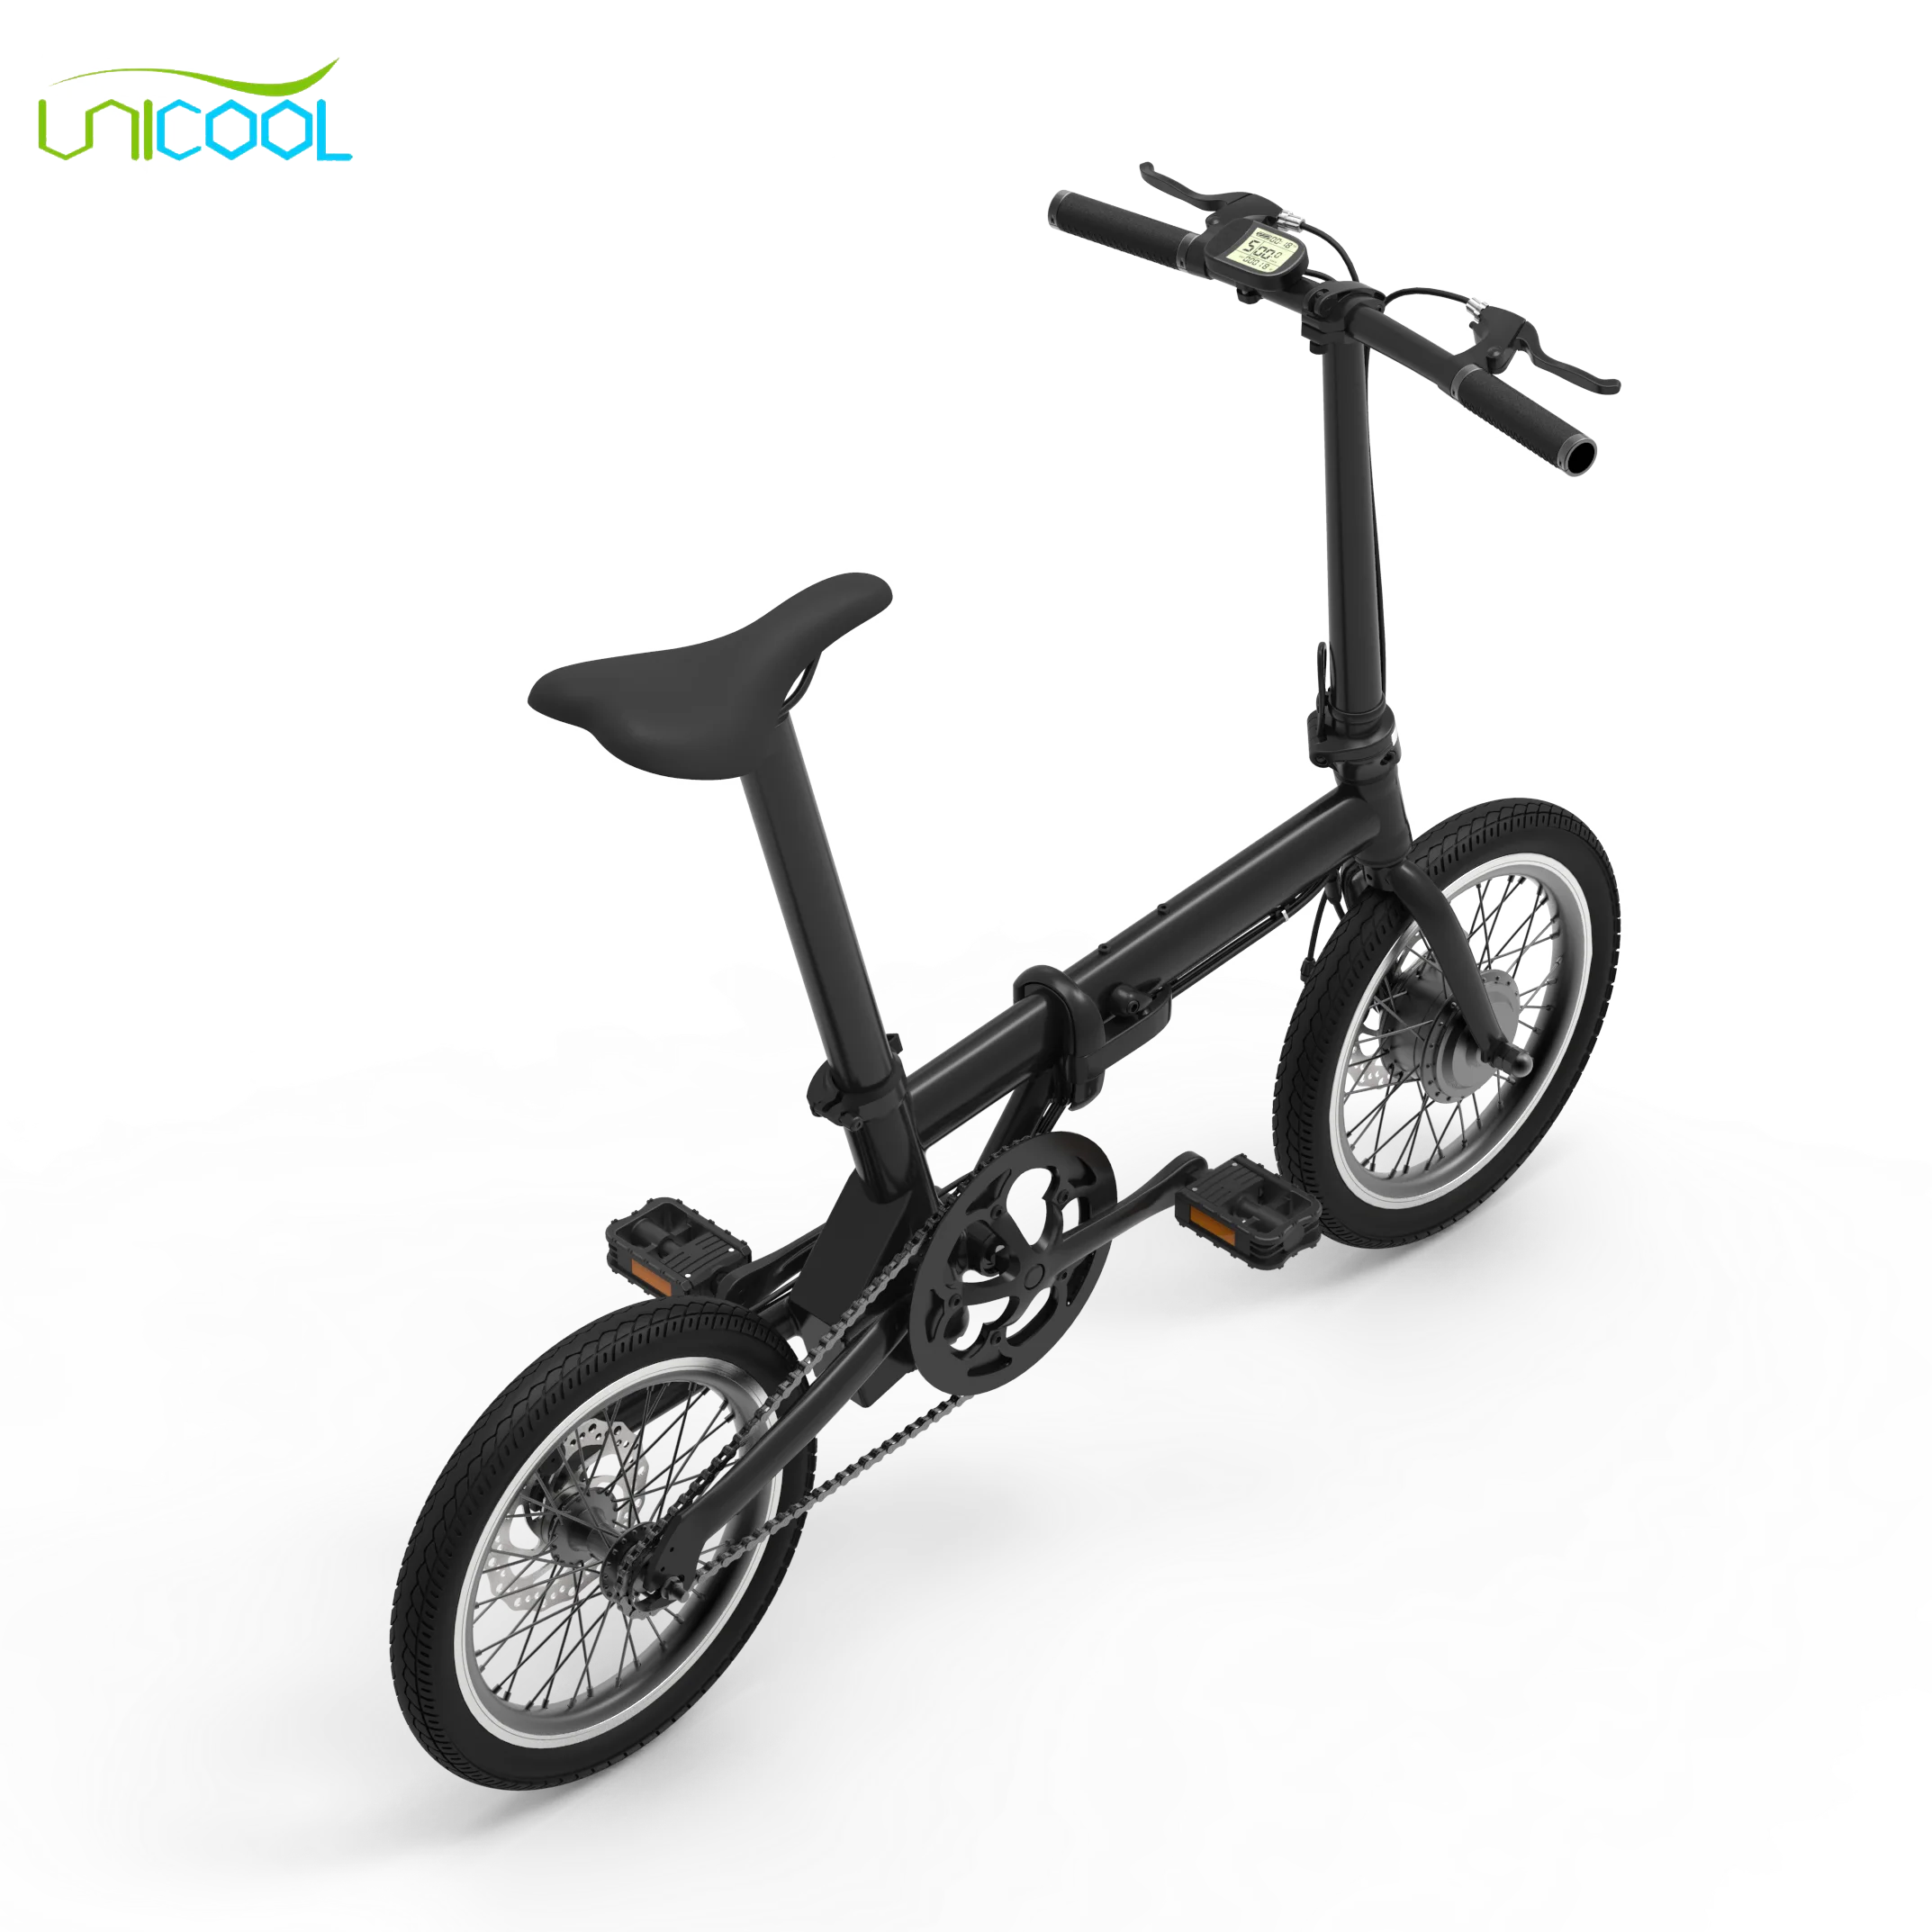 xiaomi qicycle smart electric bike